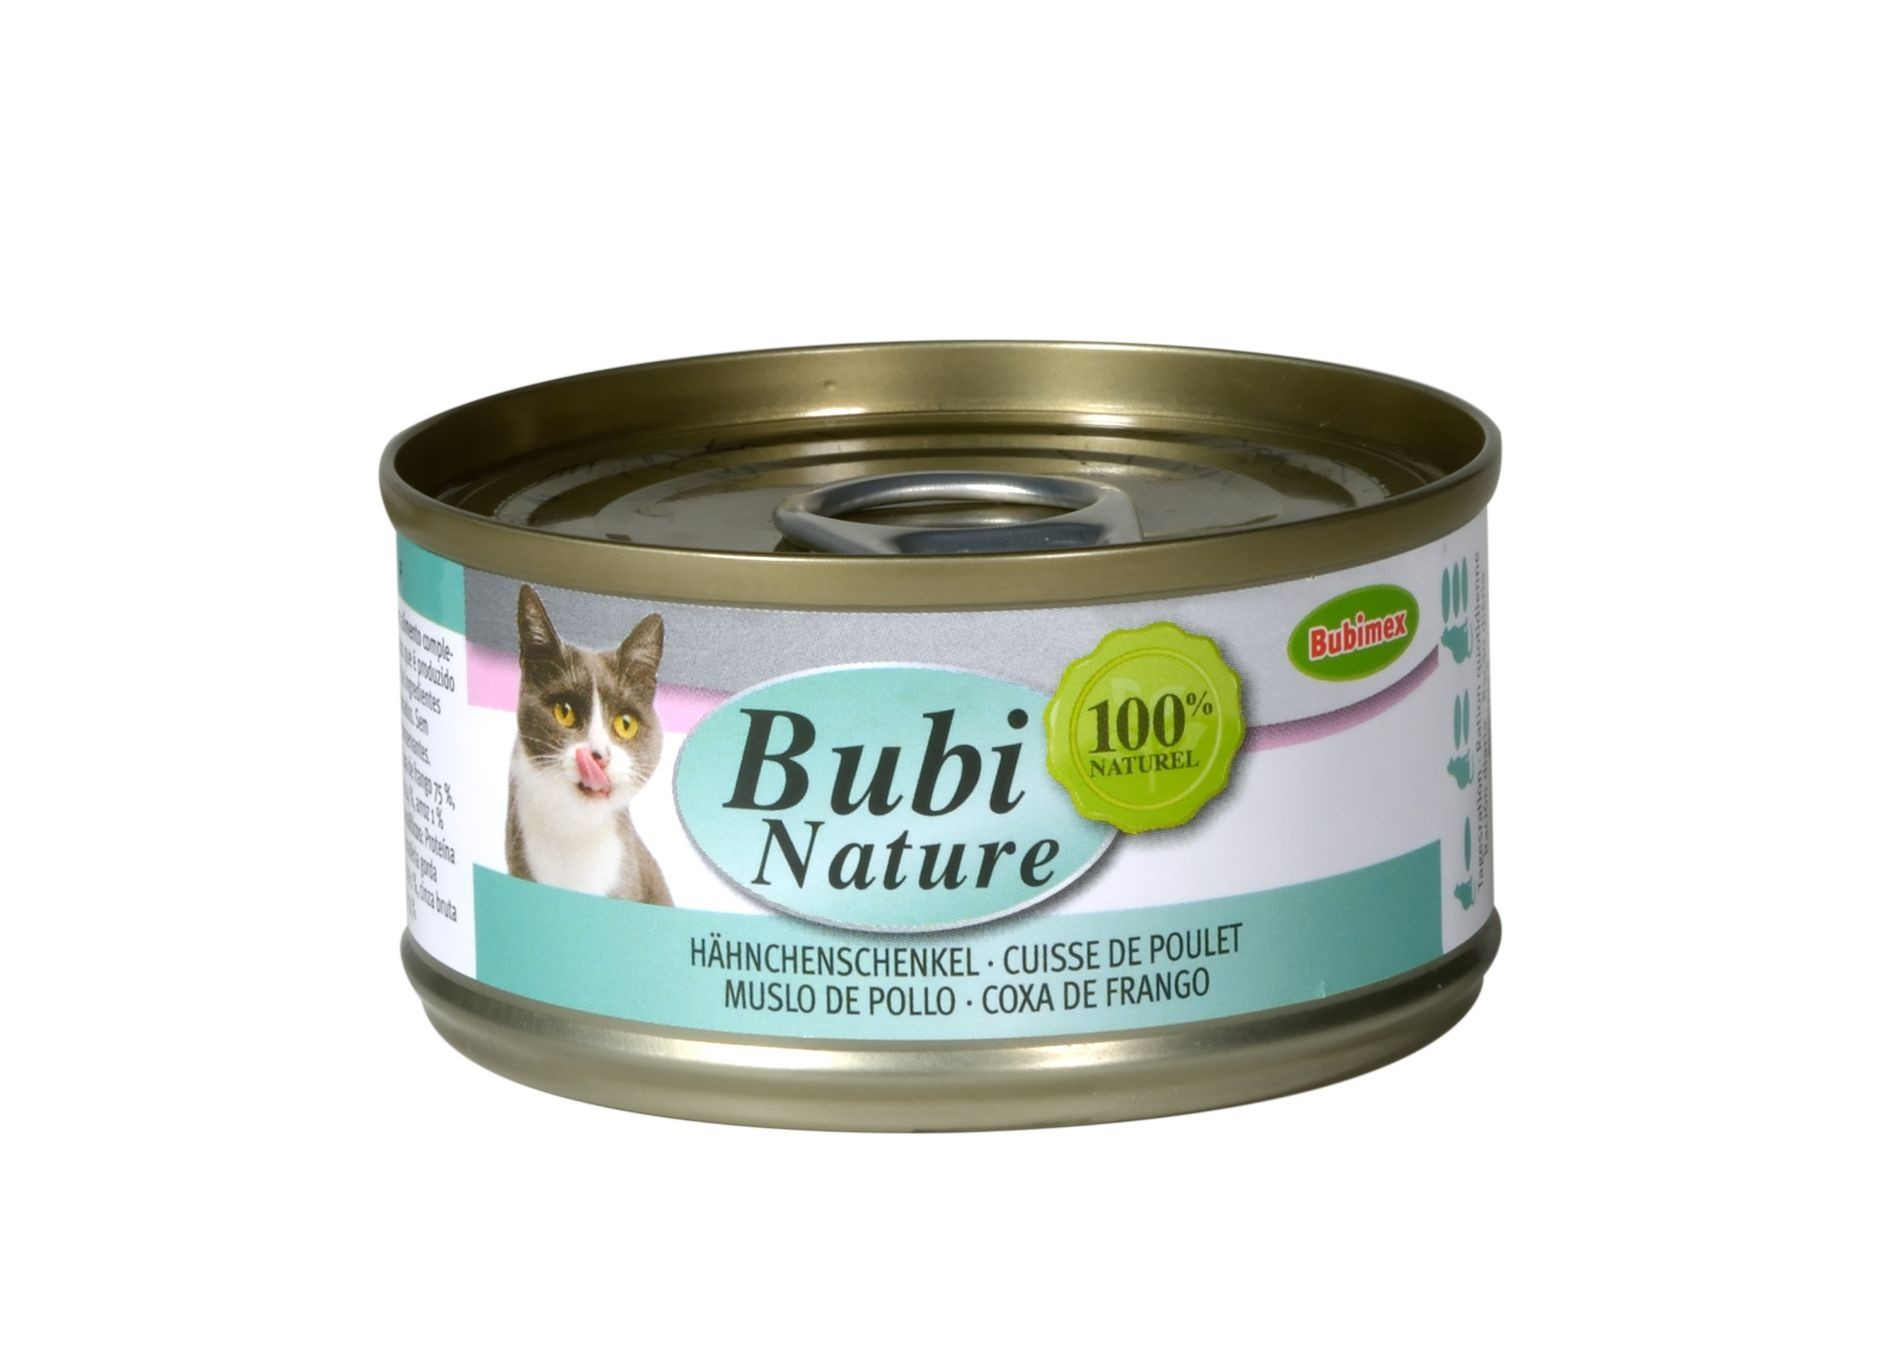 BUBIMEX Bubi Nature Nassfutter mit Hähnchenschenkel für Katzen